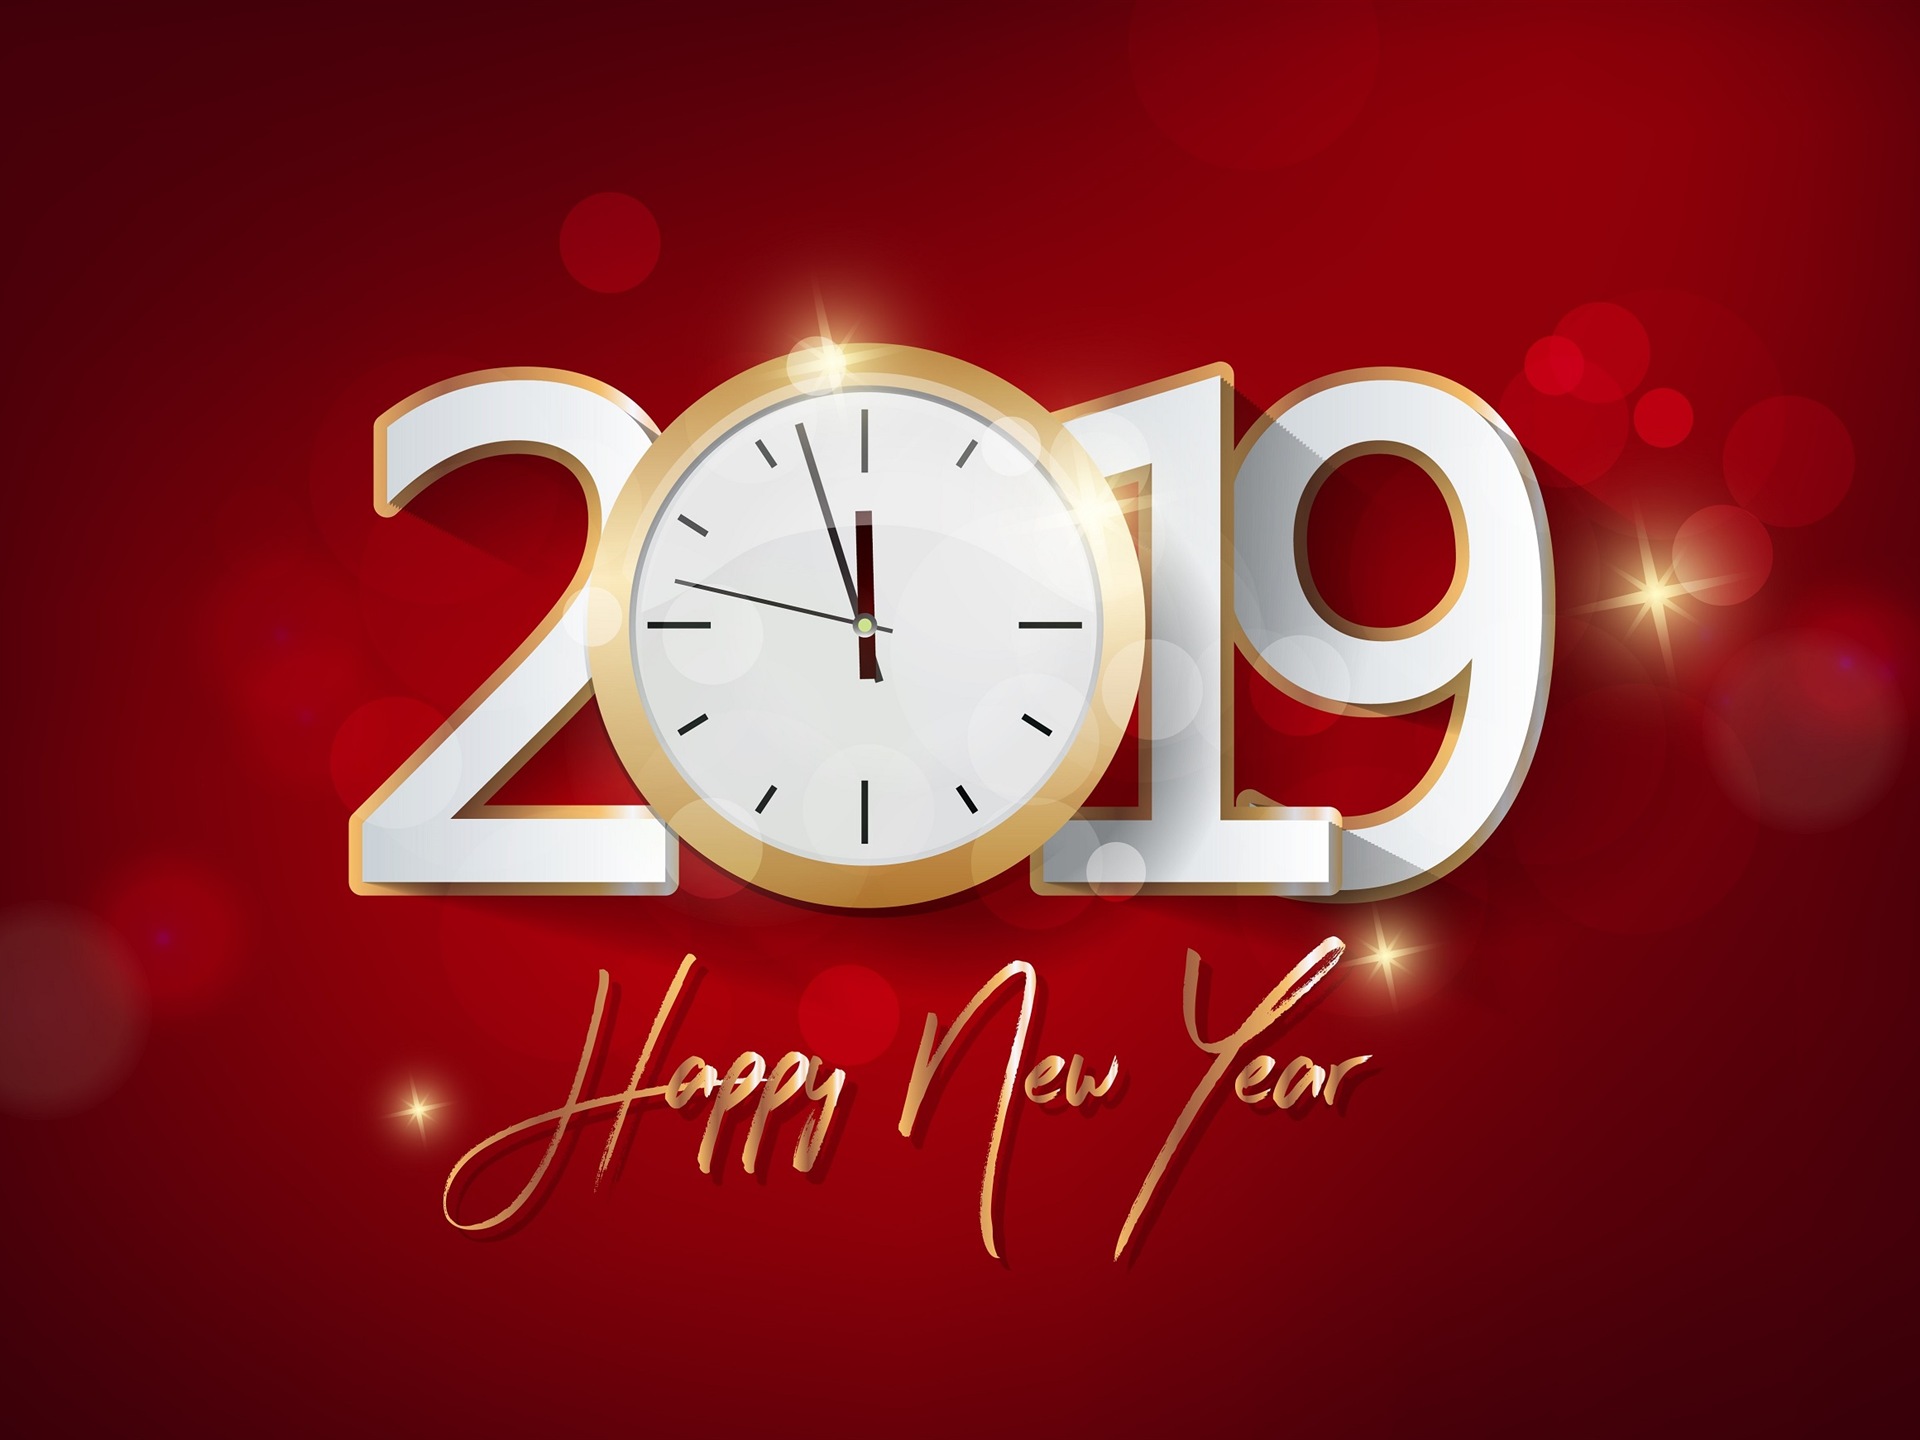 Feliz año nuevo 2019 HD wallpapers #8 - 1920x1440